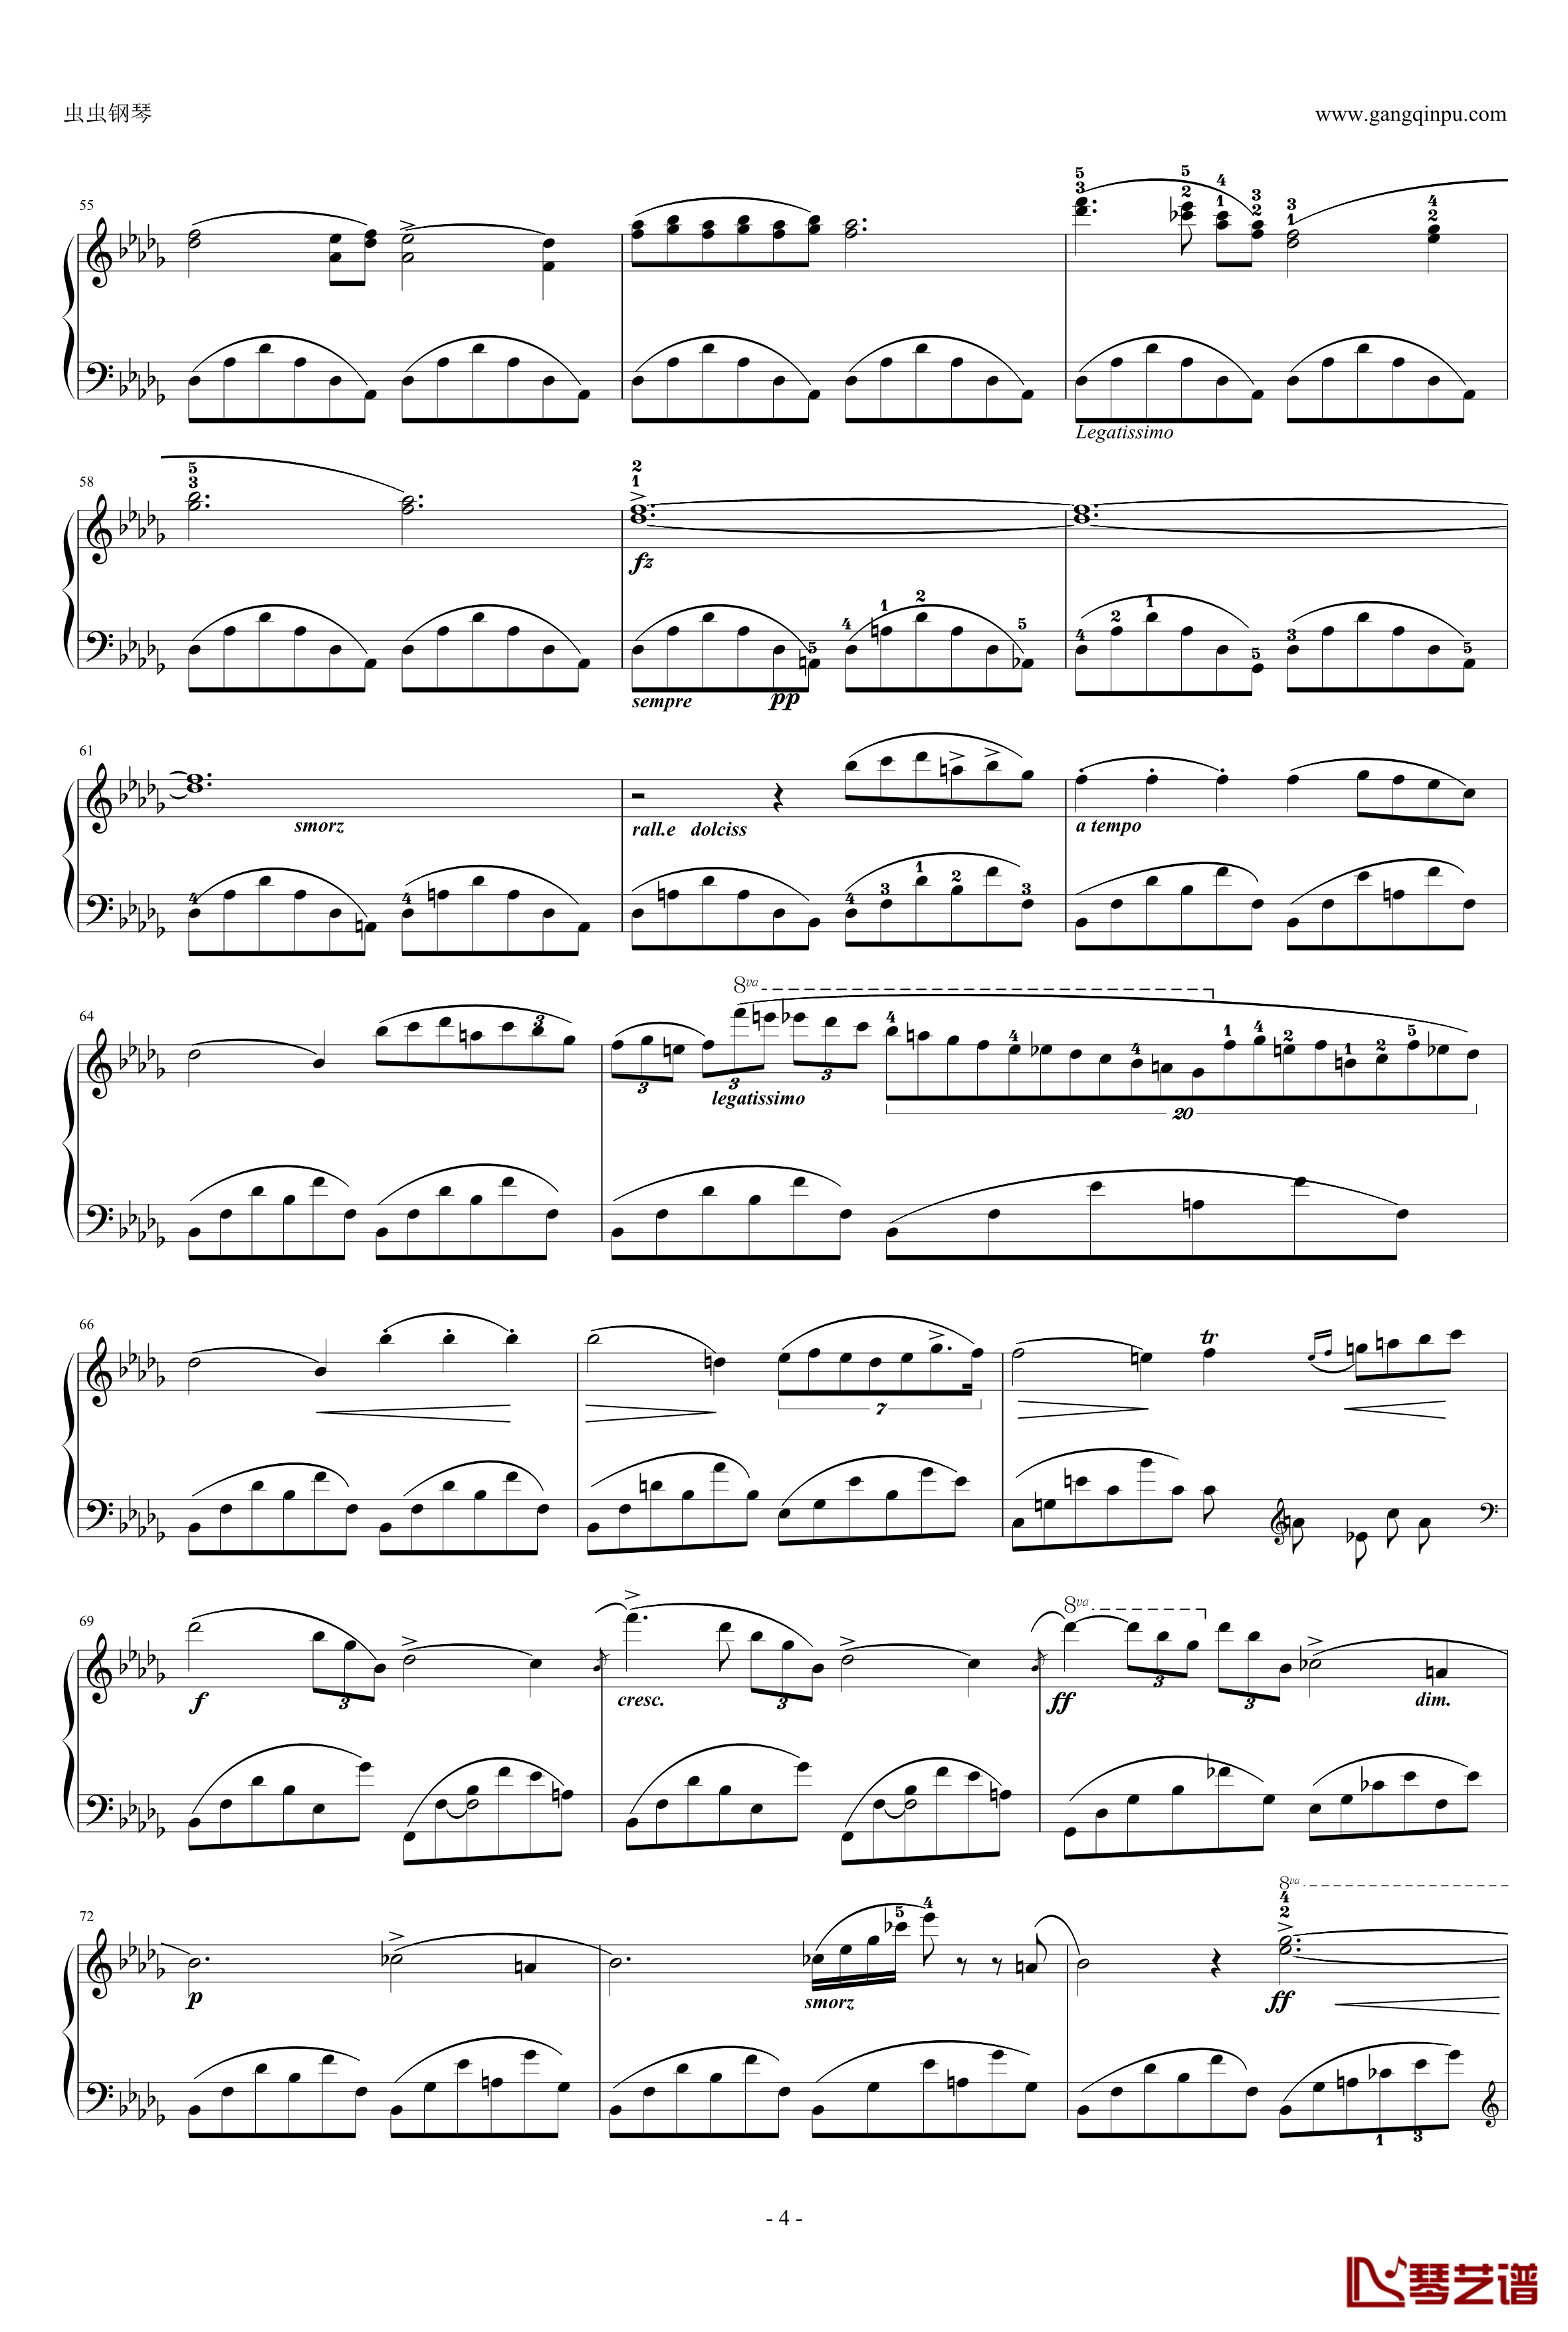 降b小调夜曲,Op.9-1钢琴谱-肖邦-chopin4